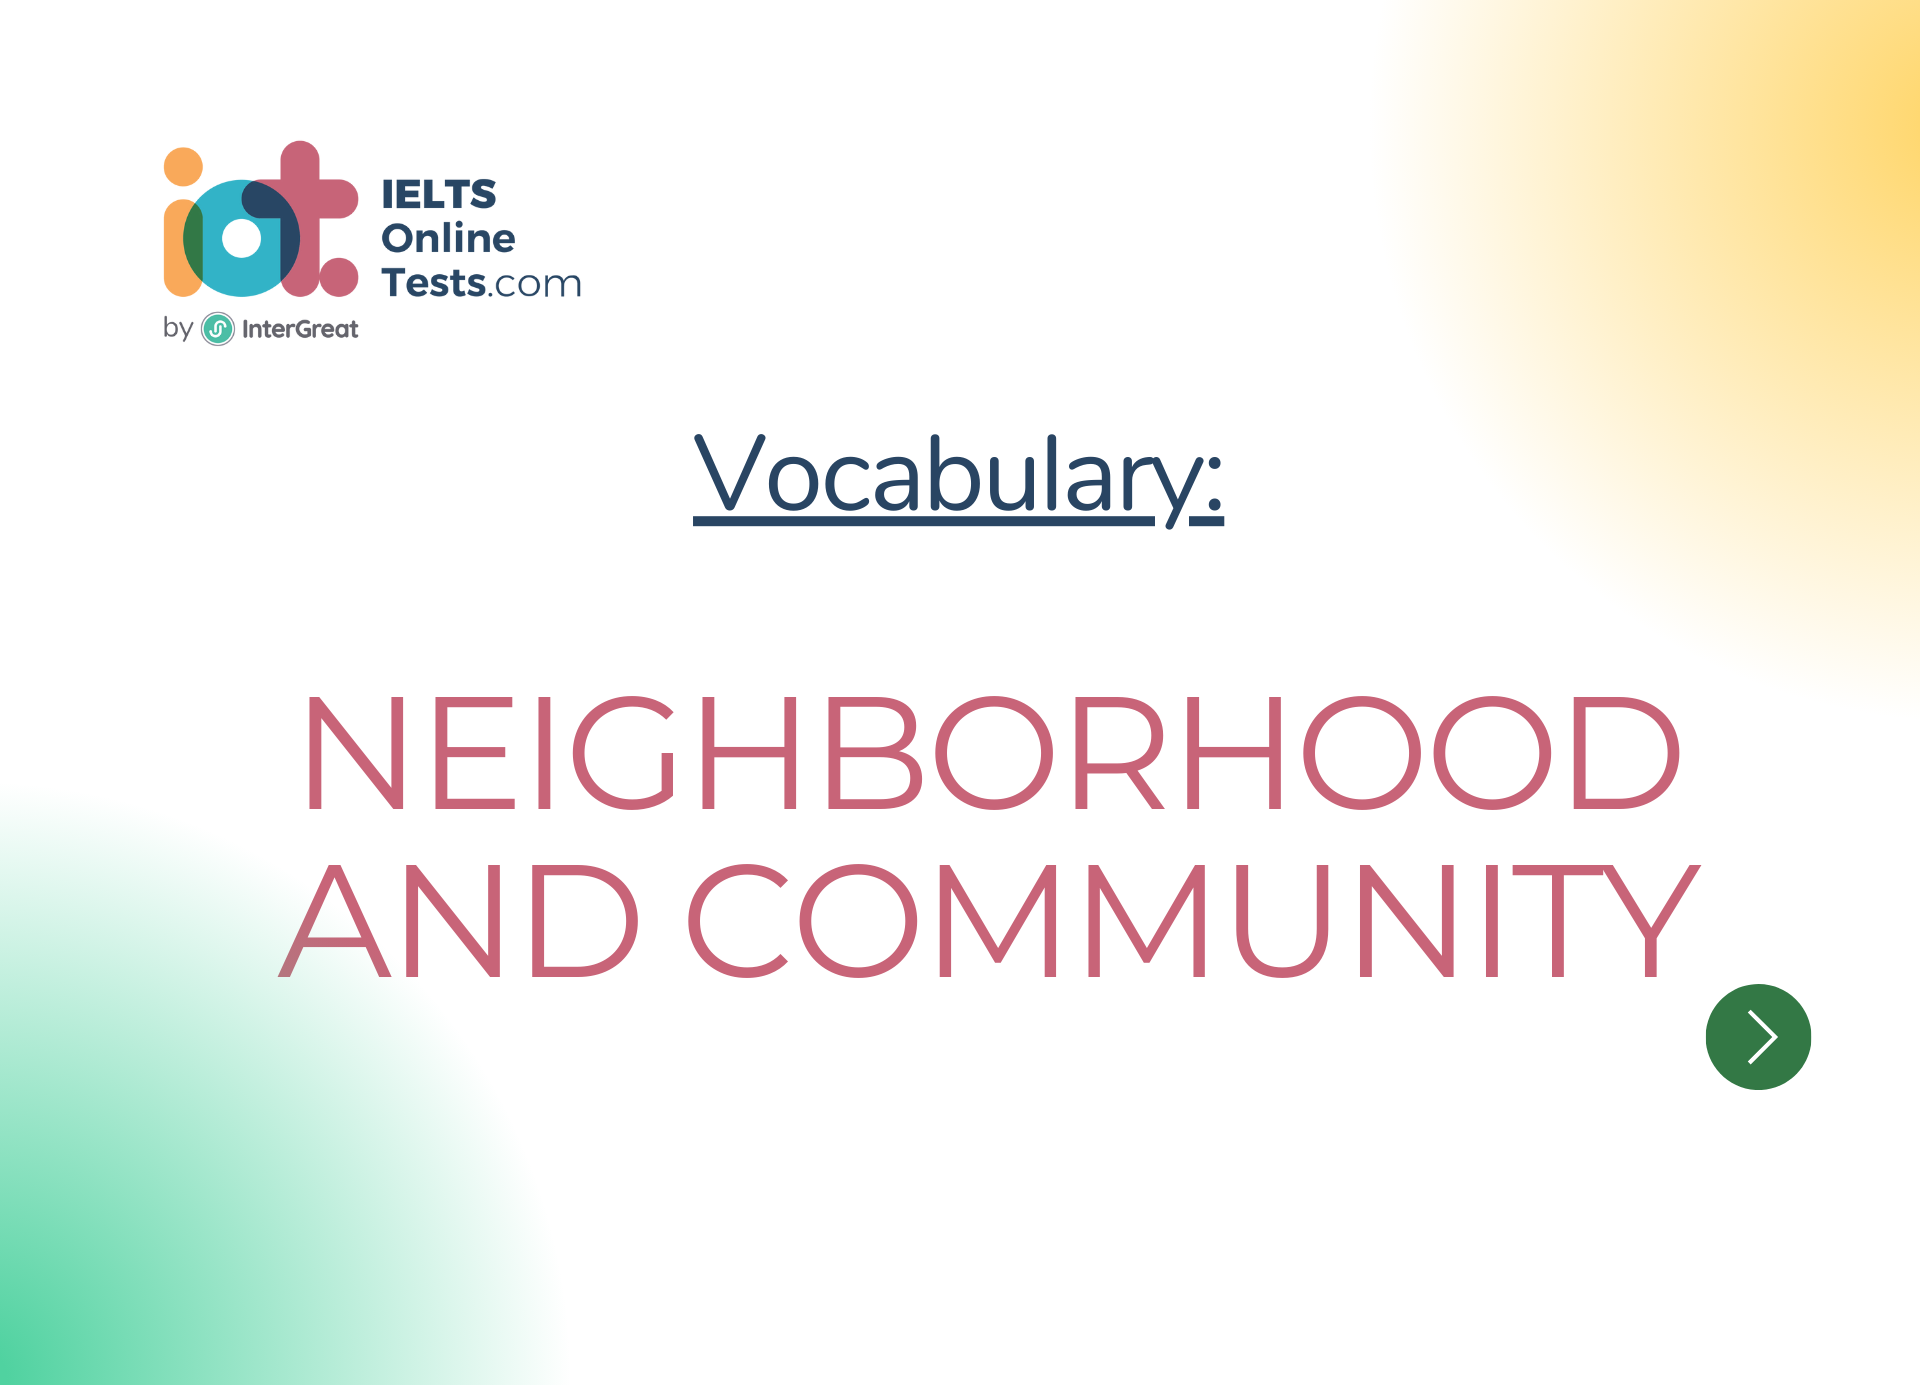 Khu phố và Cộng đồng (Neighborhood and community)